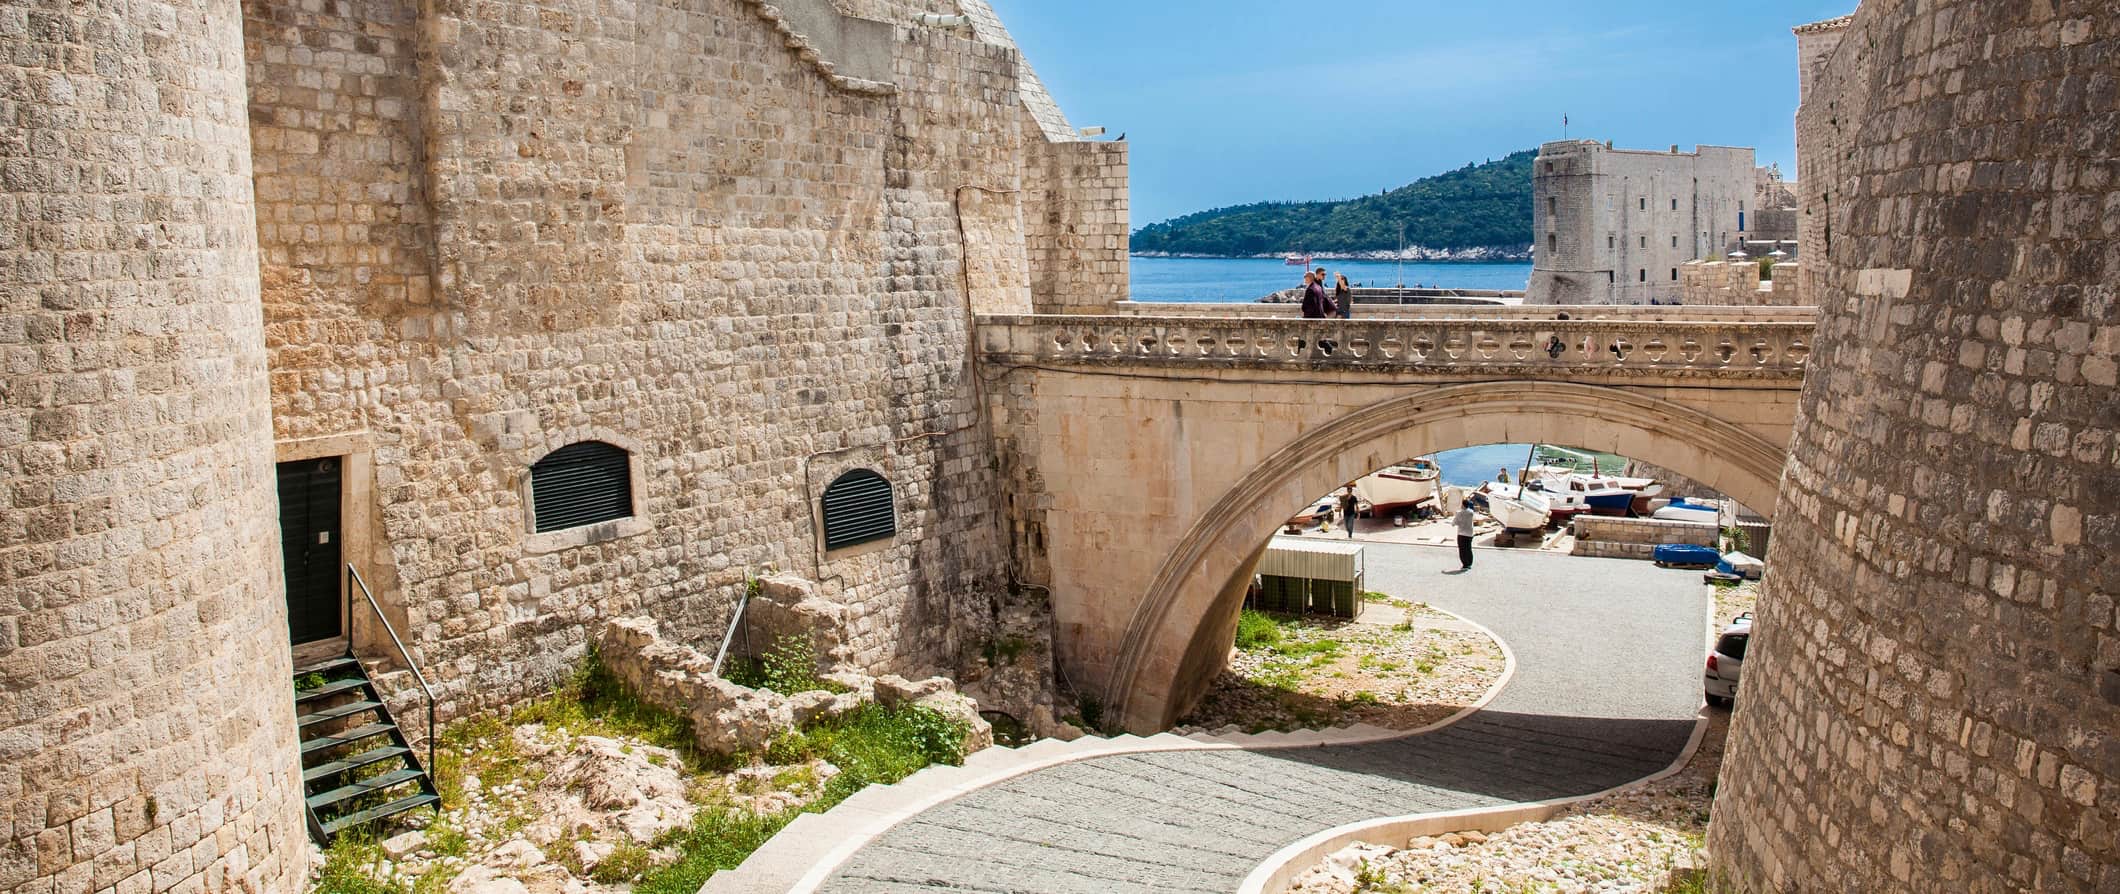 Cidade velha de Dubrovnik, Croácia e paredes da cidade imponente